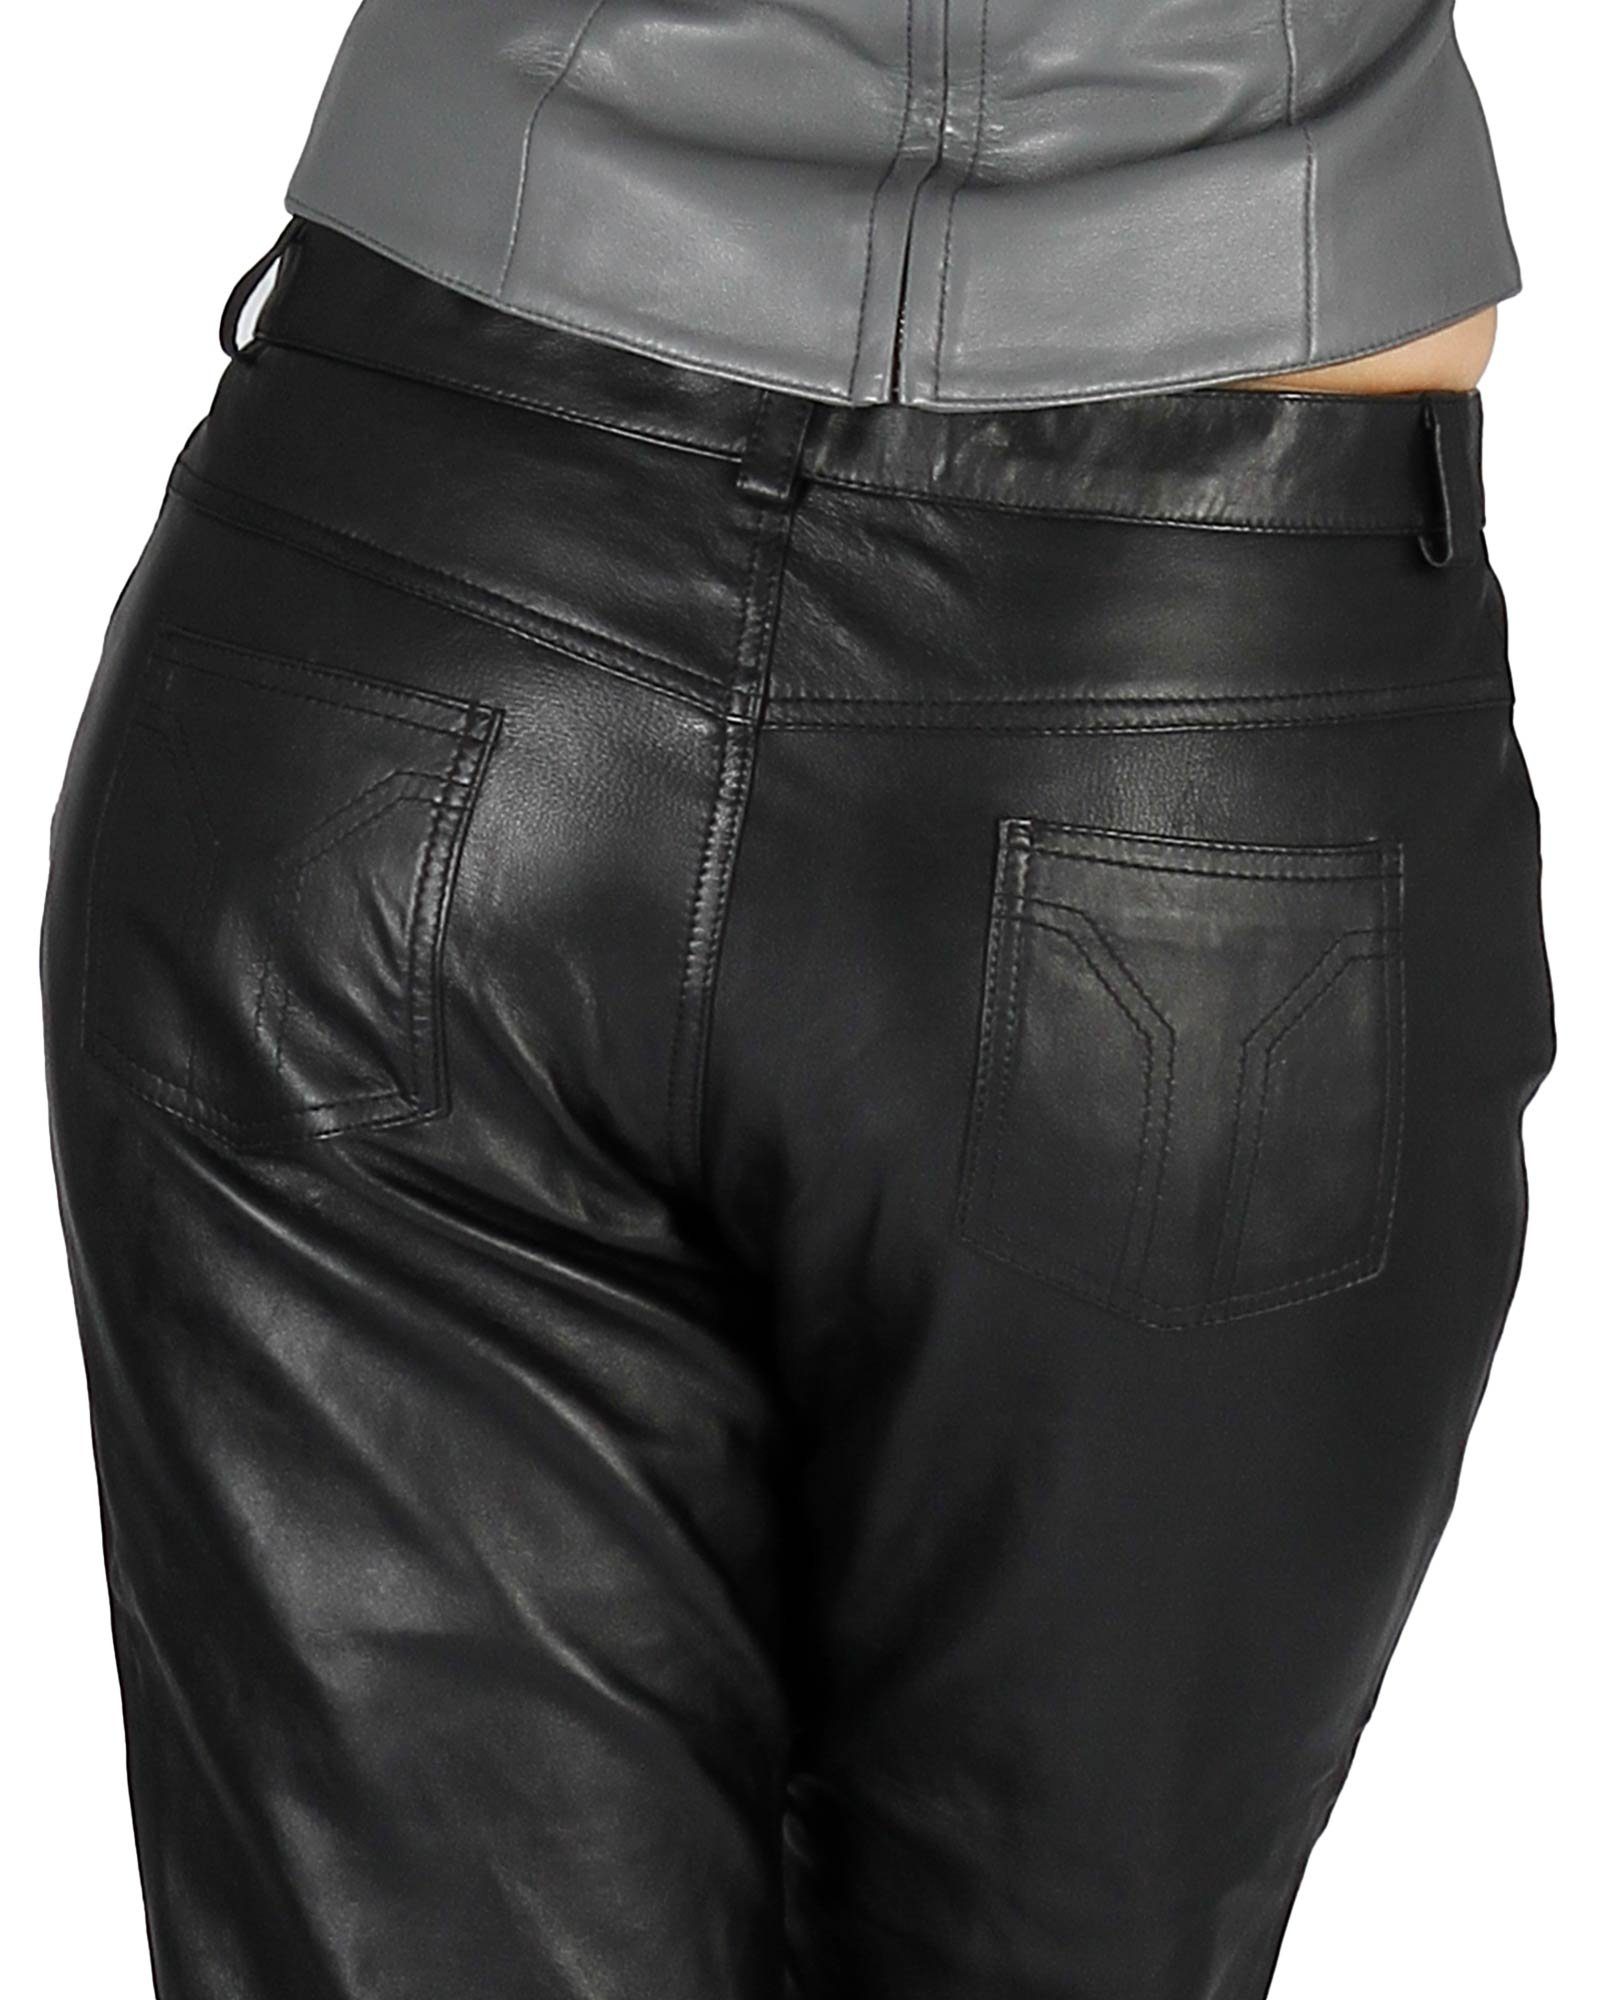 Fetish-Design Lederhose Lederhose Leder Schwarz Echtes 5-Pocket Damenlederhose